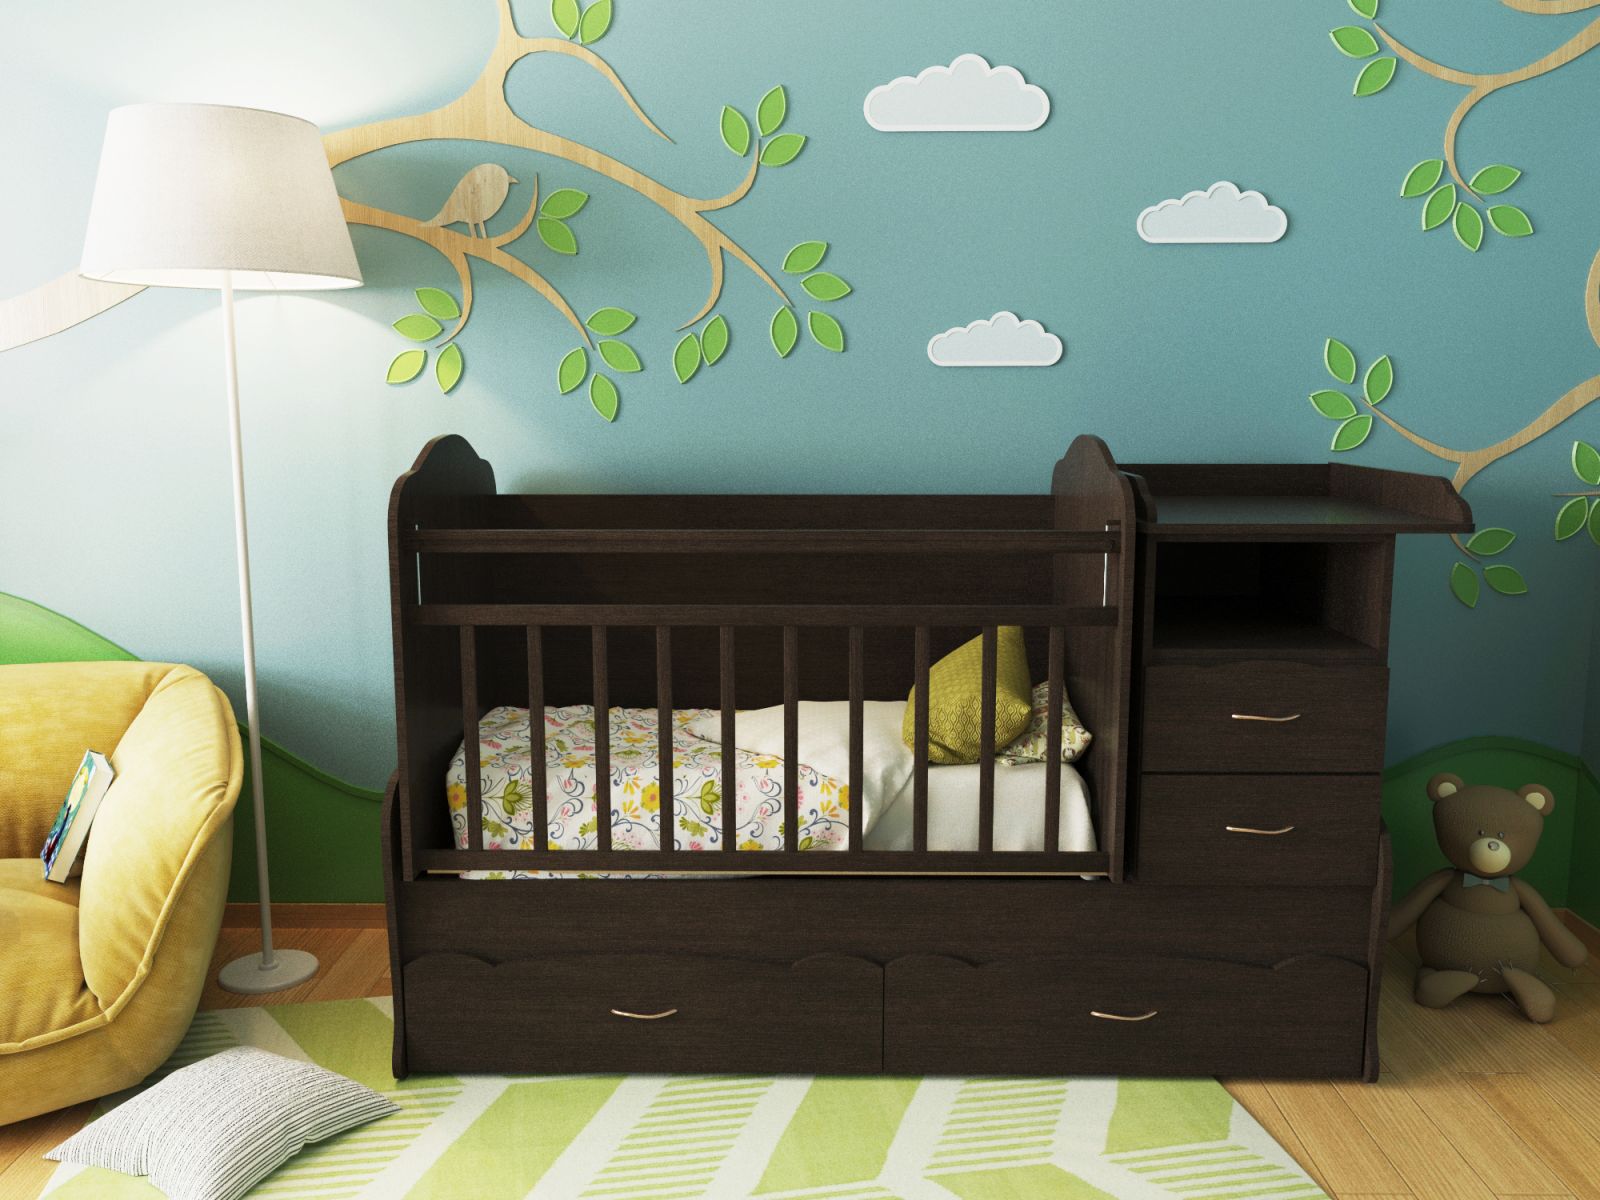 Детская кроватка-трансформер Алиса, кроватка для новорожденных с пеленальным комодом, подростковая кровать + письменный стол с ящиками,